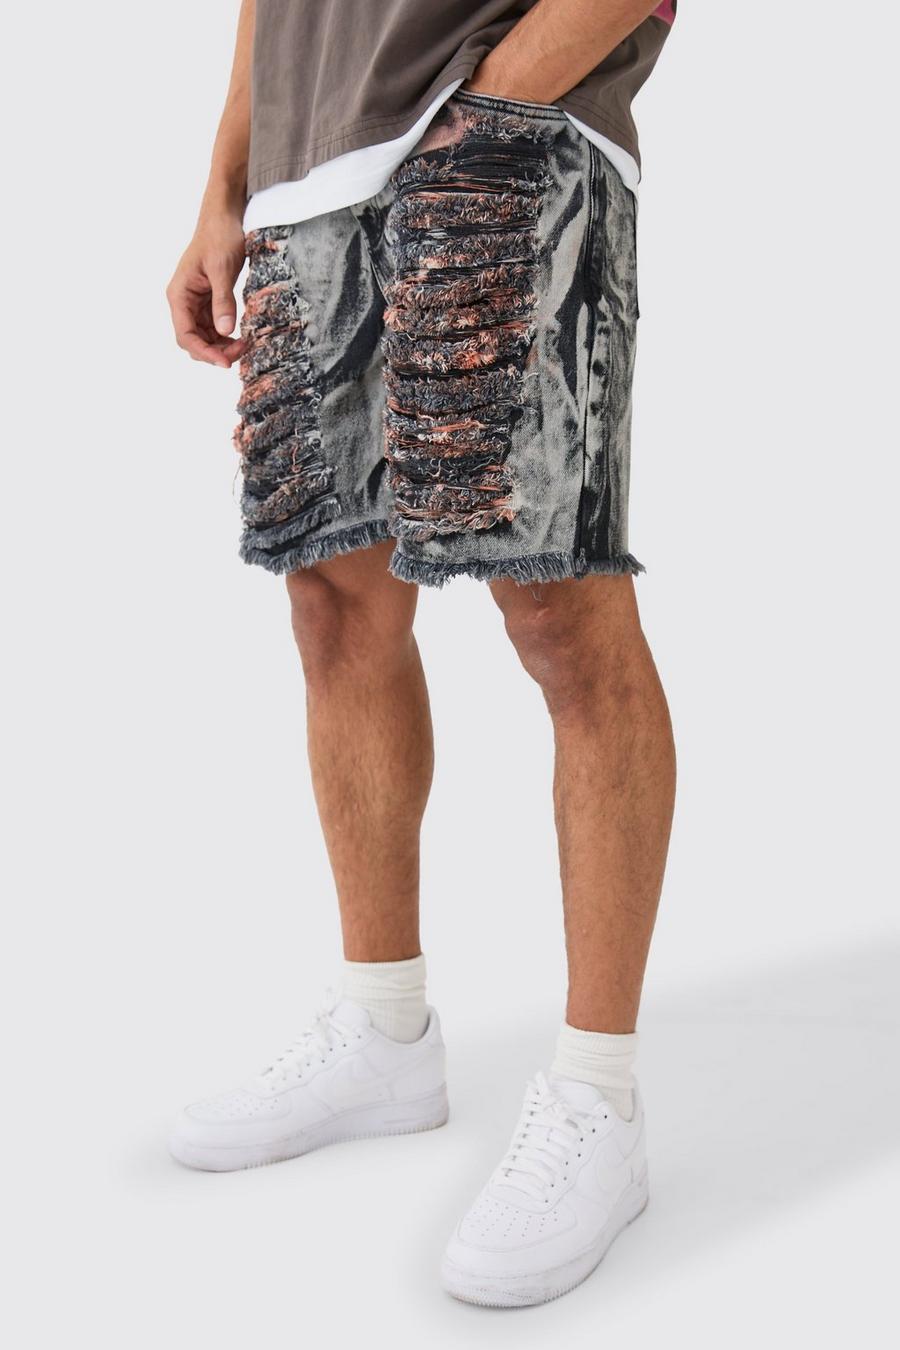 Onbewerkte Extreem Gescheurde Baggy Denim Shorts In Charcoal